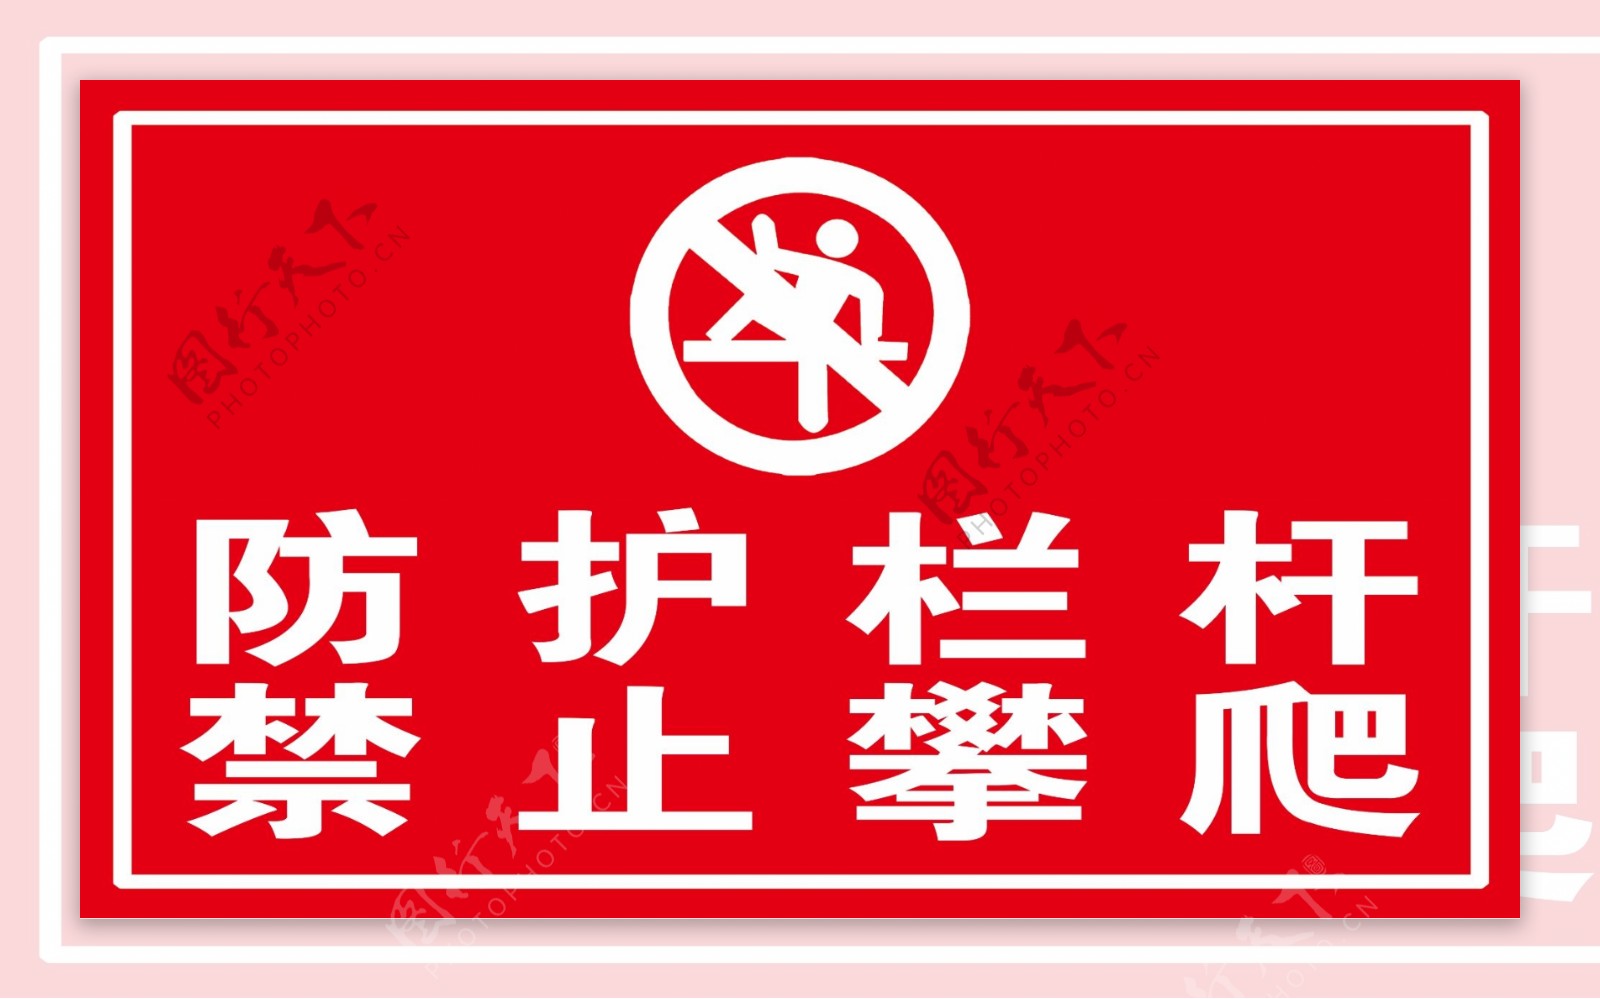 禁止攀爬防护栏杆标识